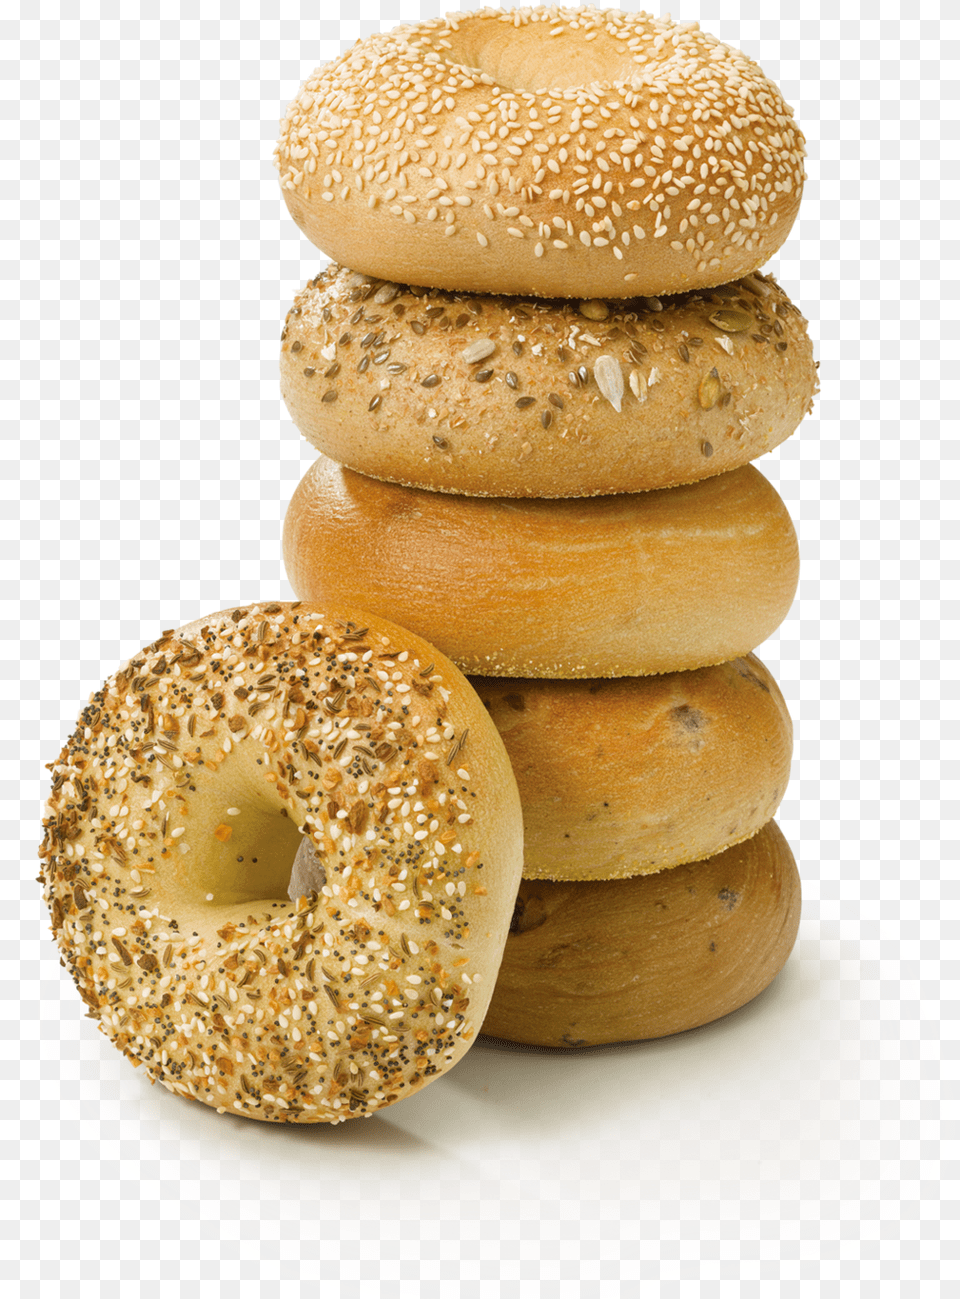 Bagels Transparent, Bagel, Bread, Food, Burger Png Image